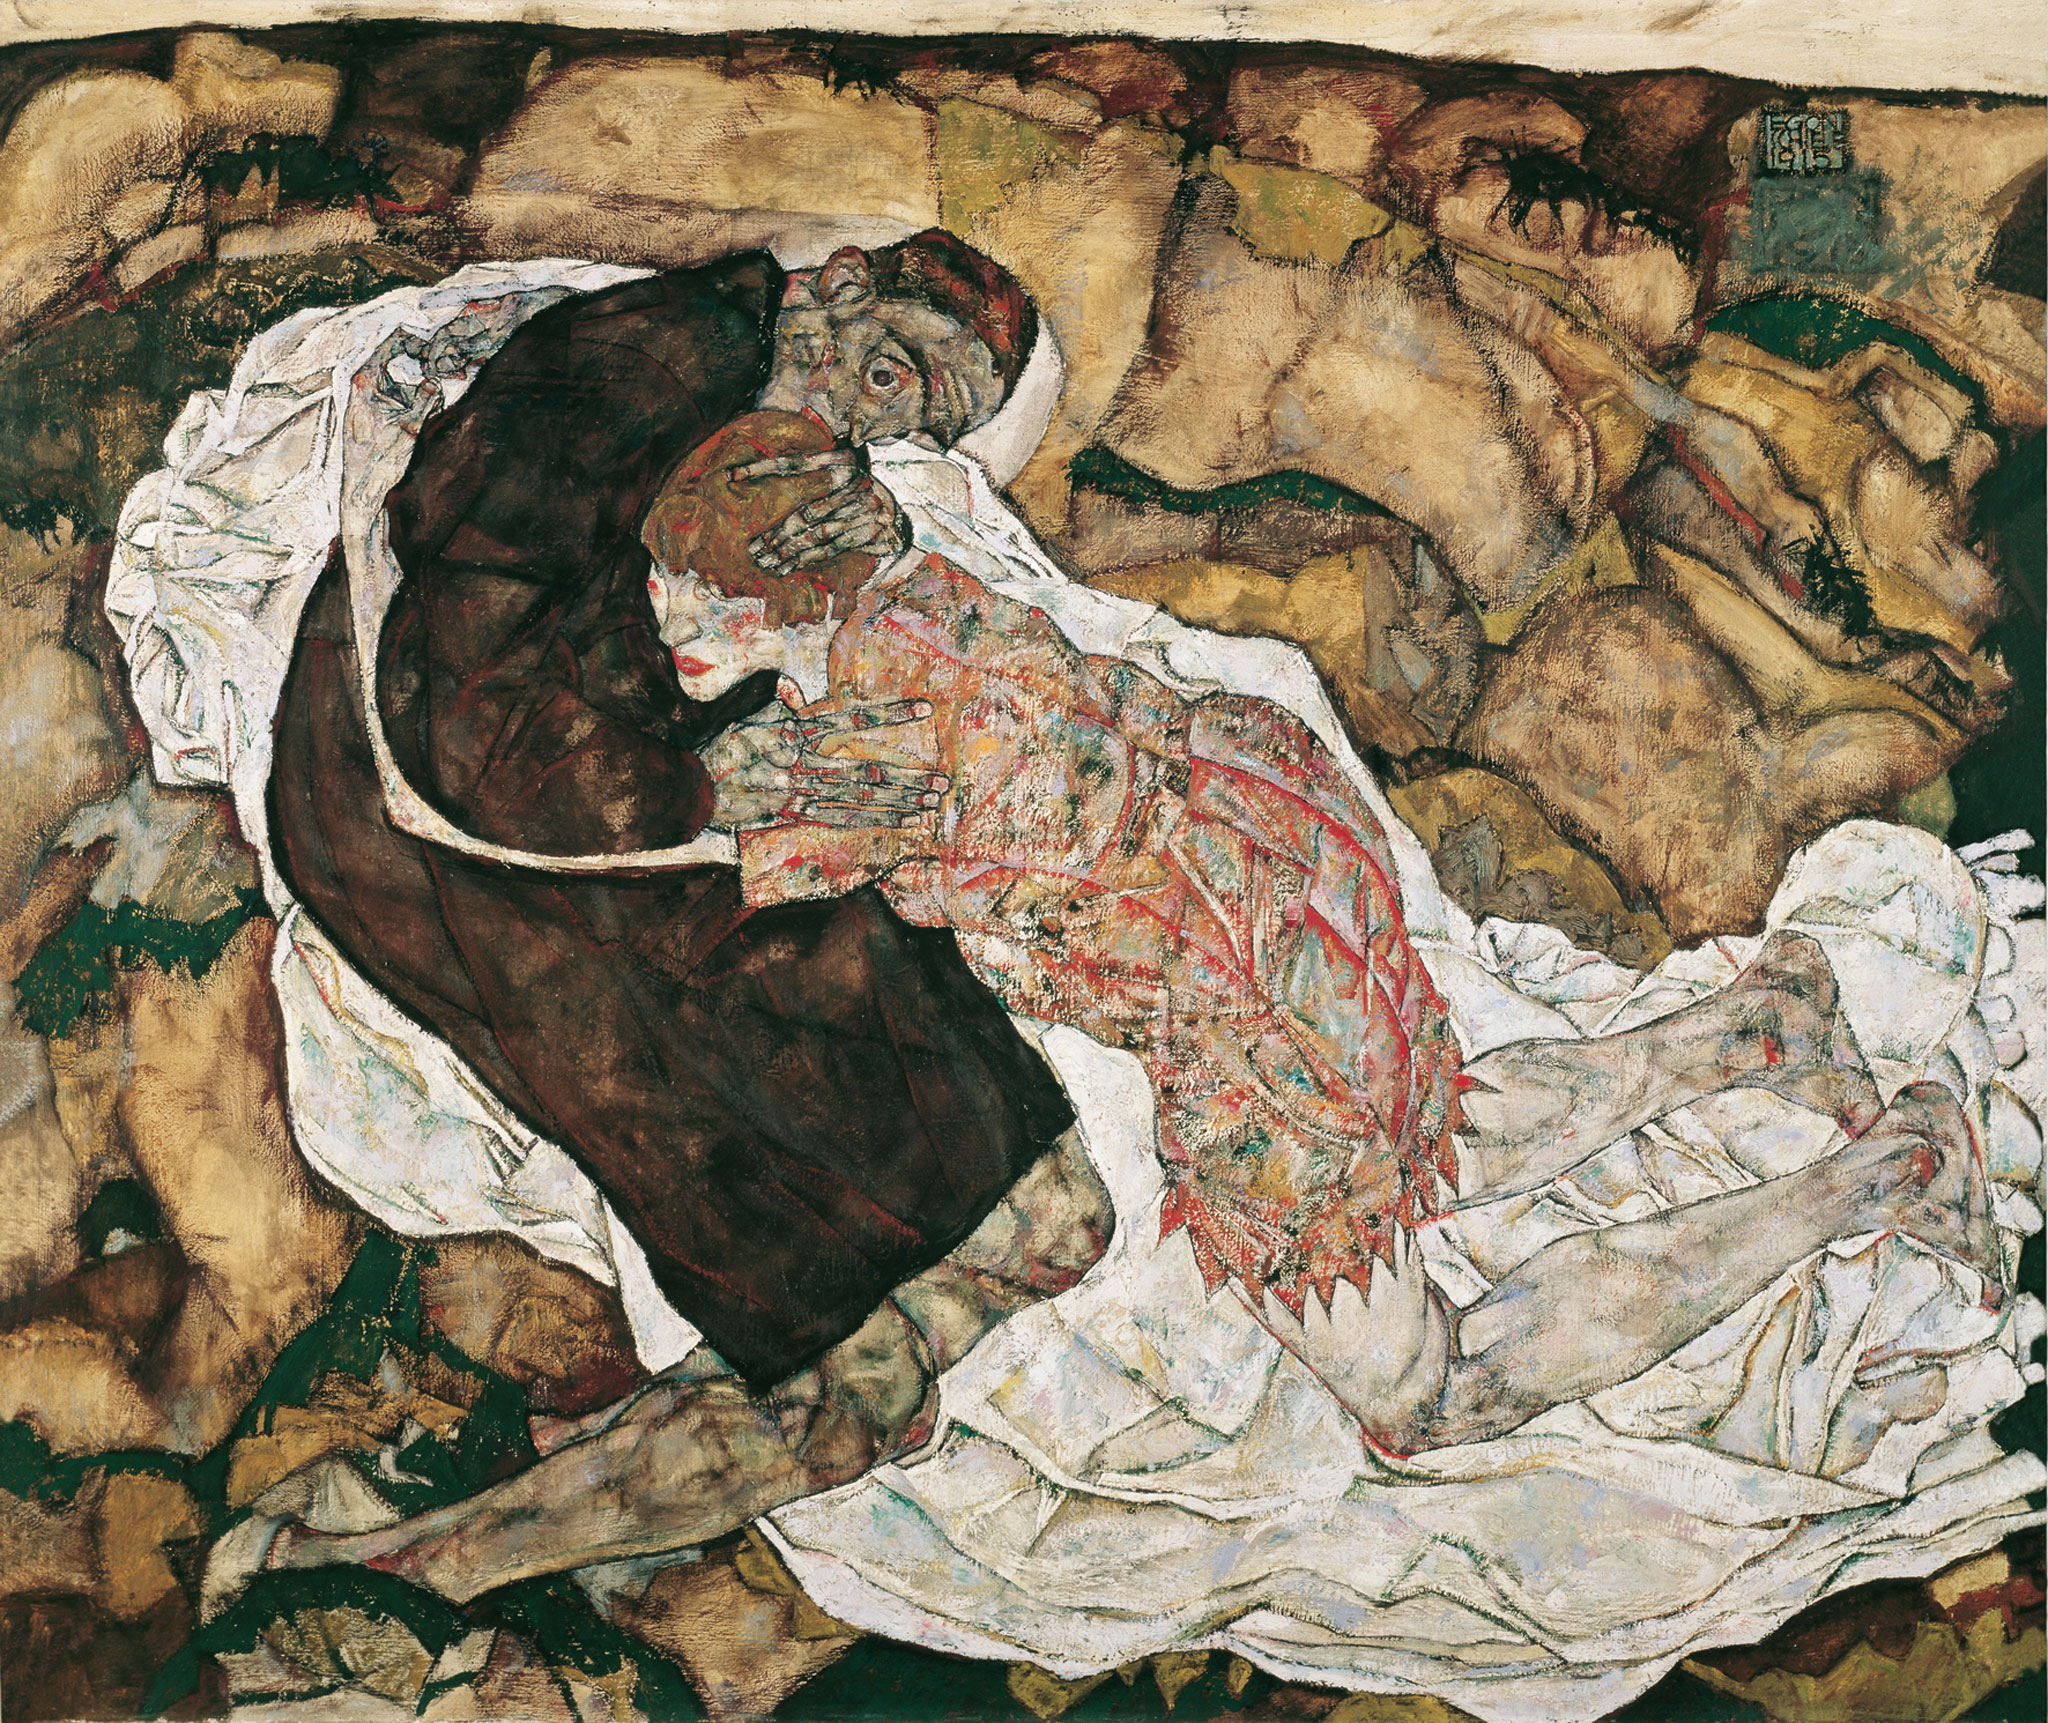 Dood en het Meisje by Egon Schiele - 1915 - 89.5 x 125.5 cm ÖSterreichische Galerie Belvedere